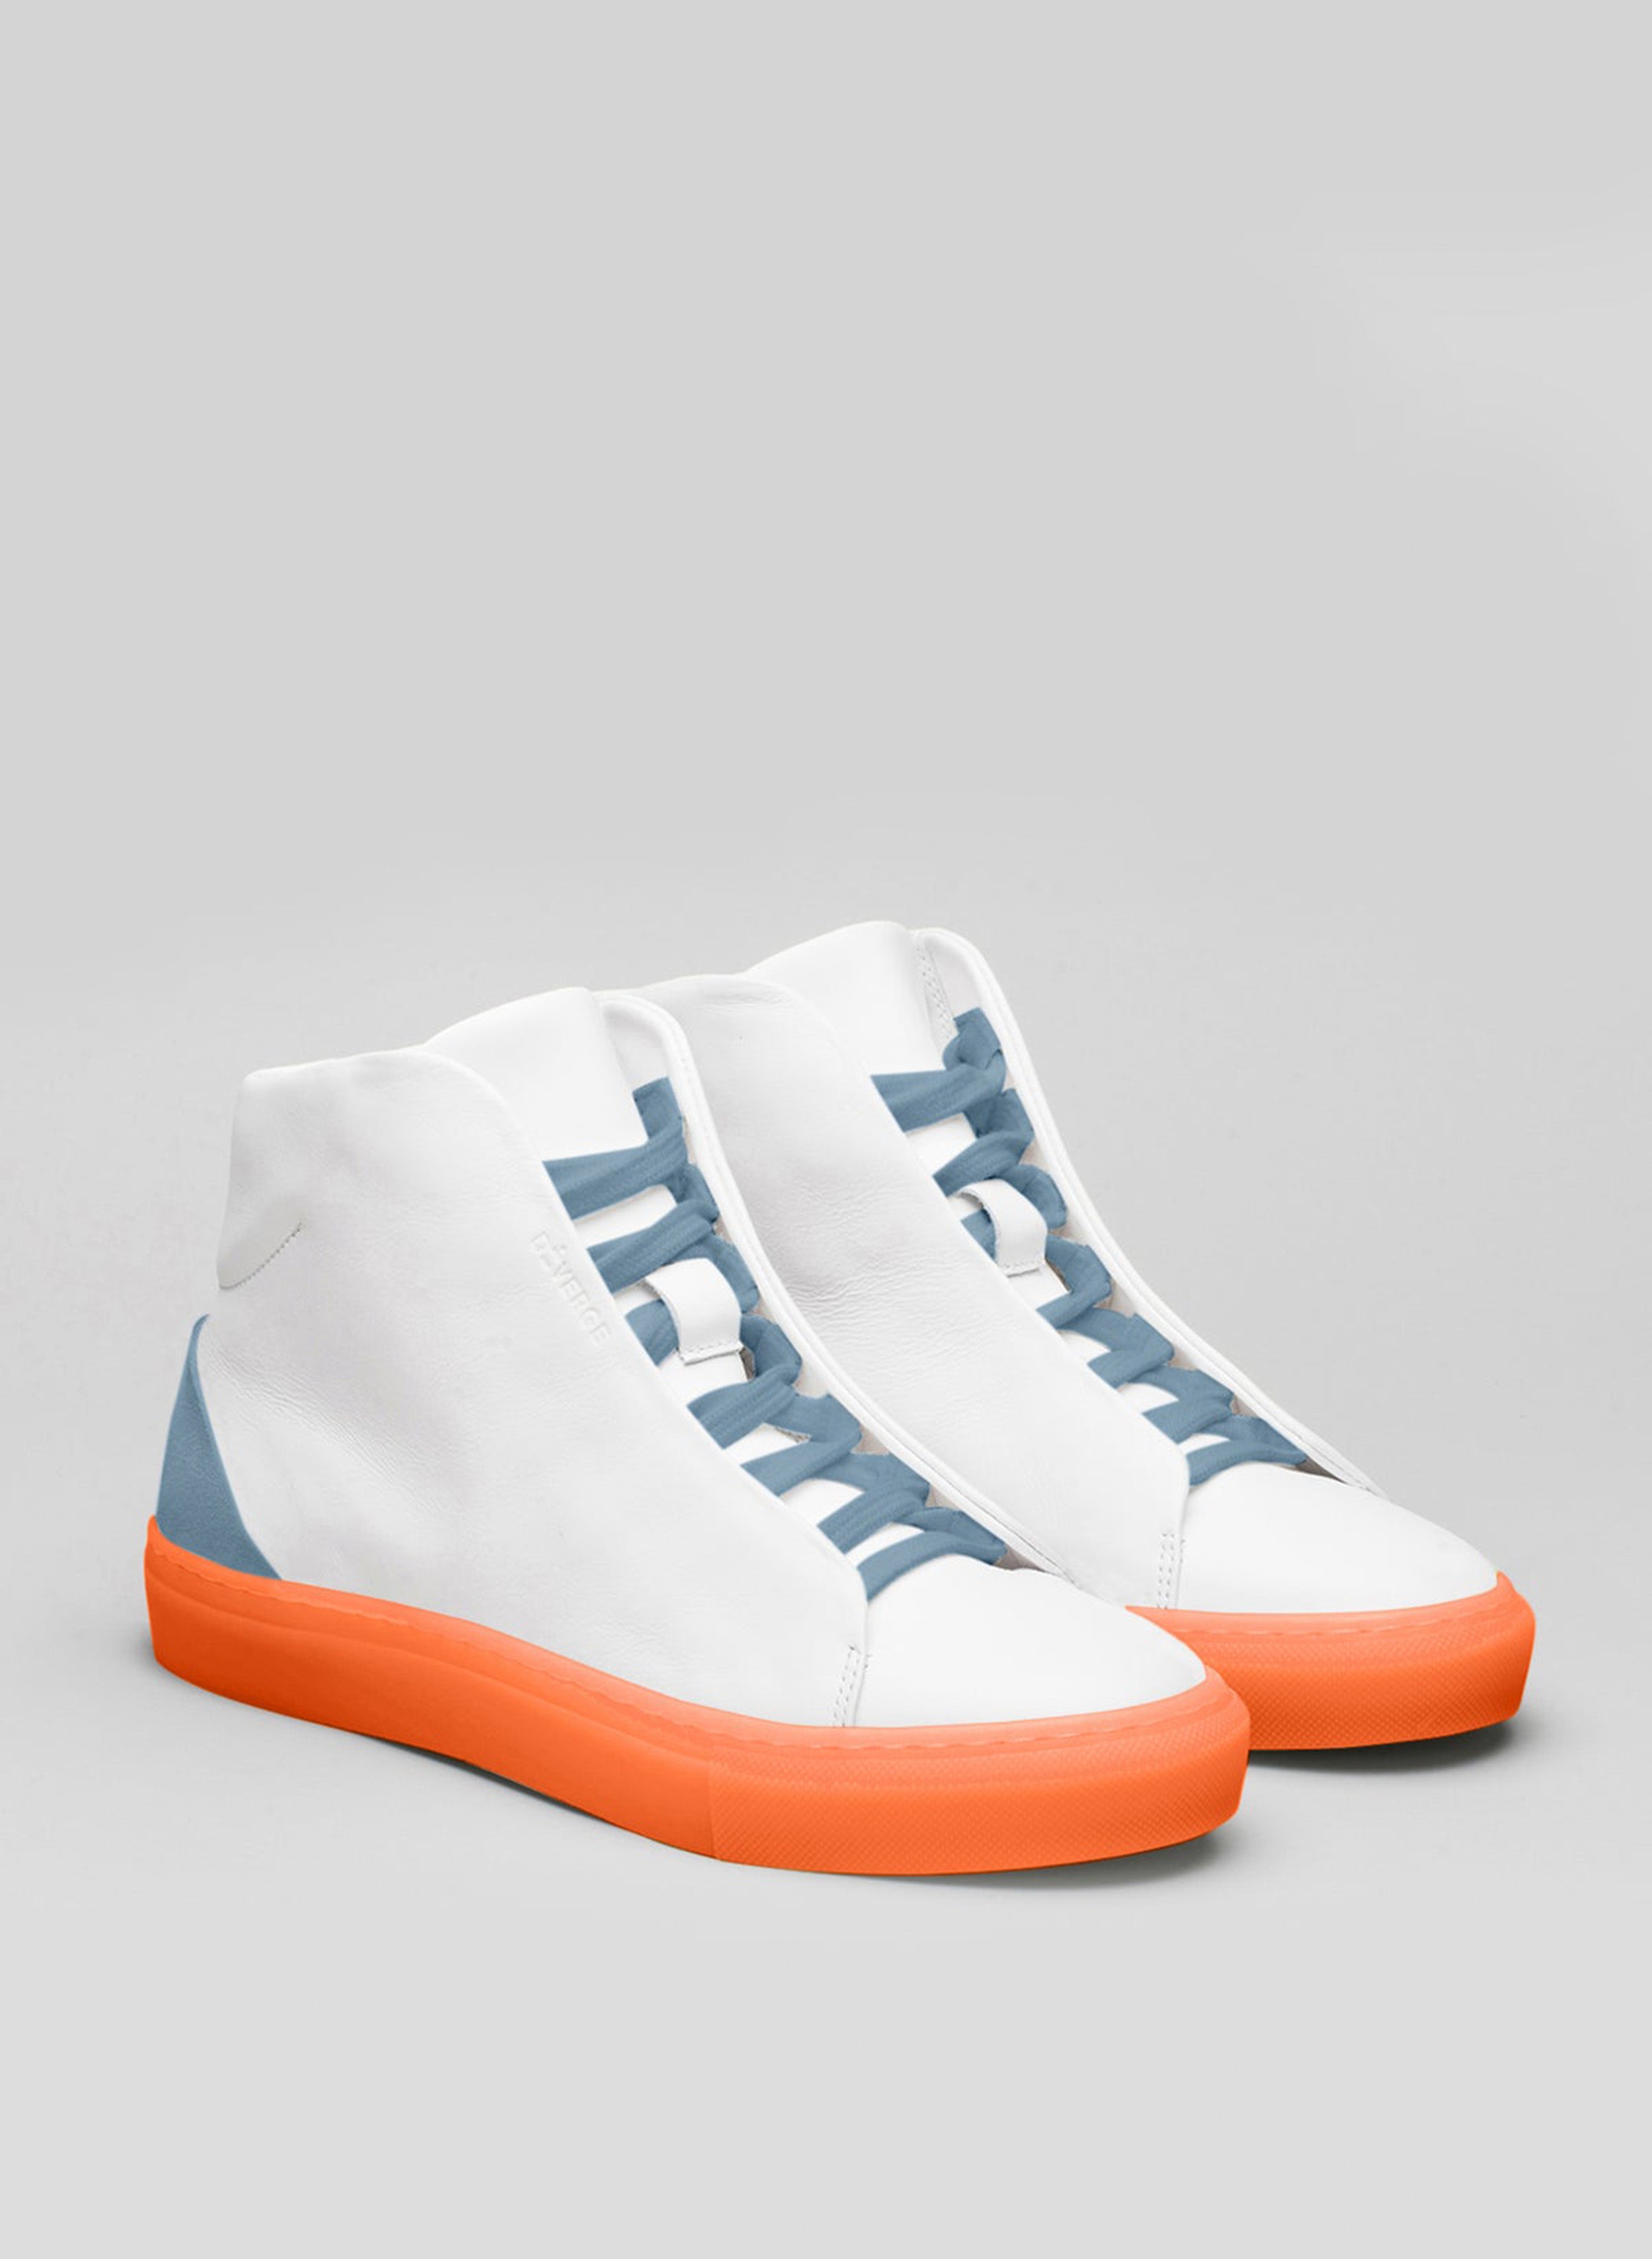 Une paire de chaussures blanches sneakers avec des lacets bleus et une semelle orange, mettant en valeur les chaussures personnalisées par Diverge.